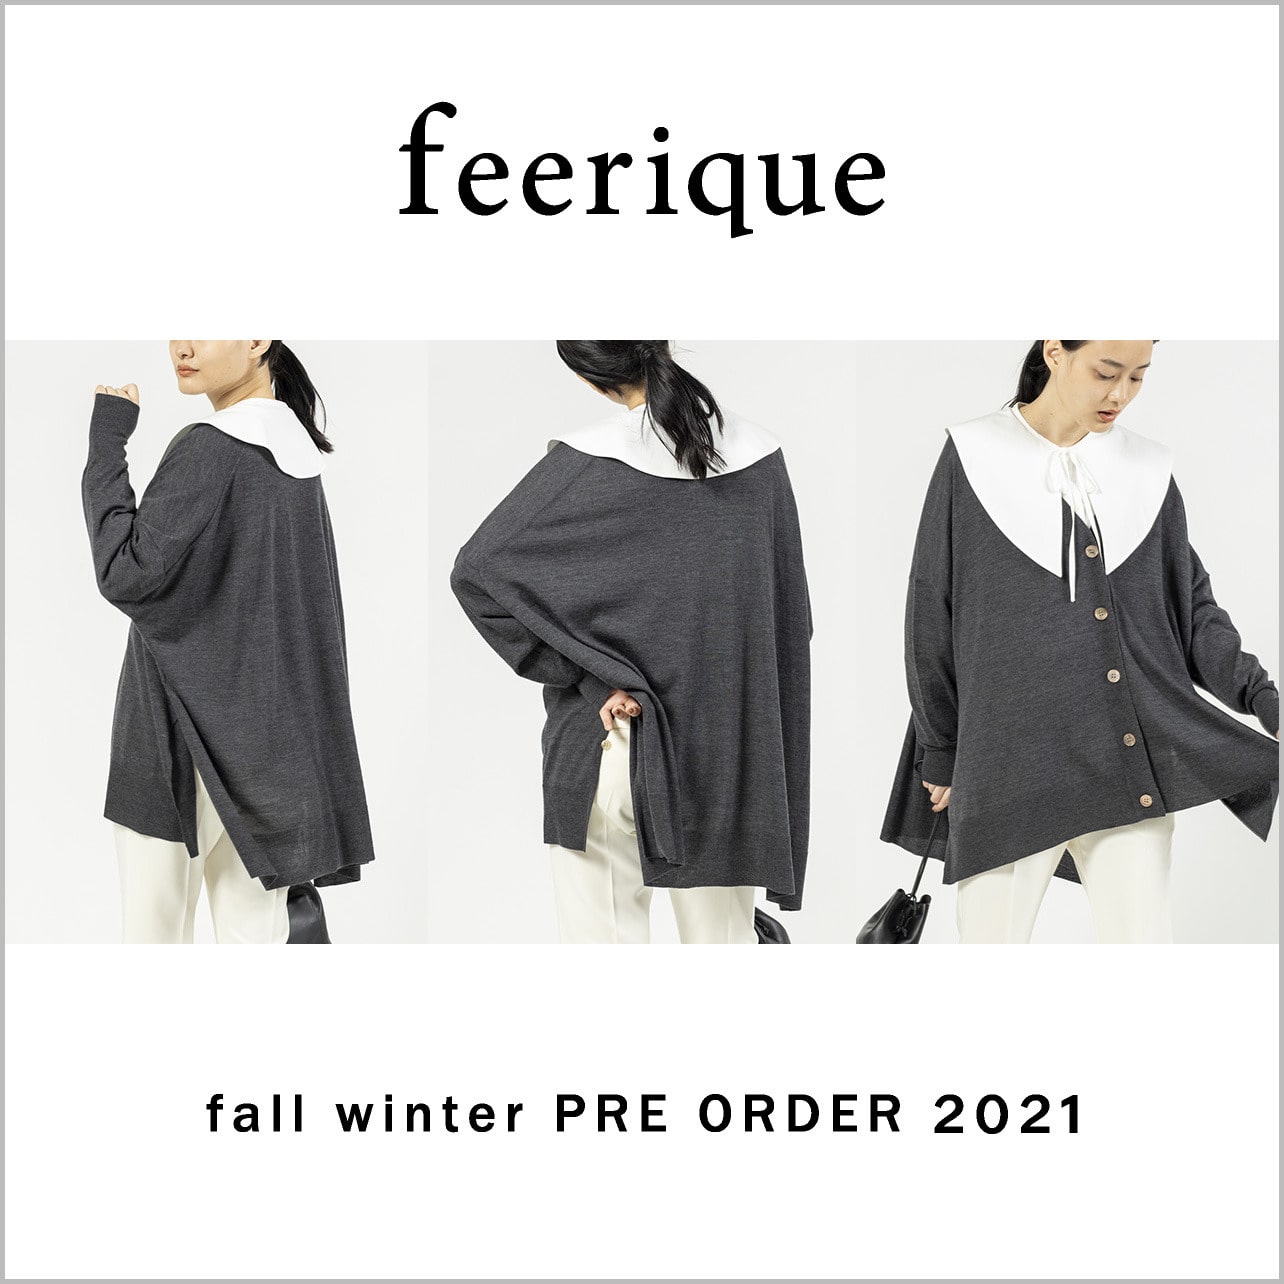 feerique fall winter Preorder 2021